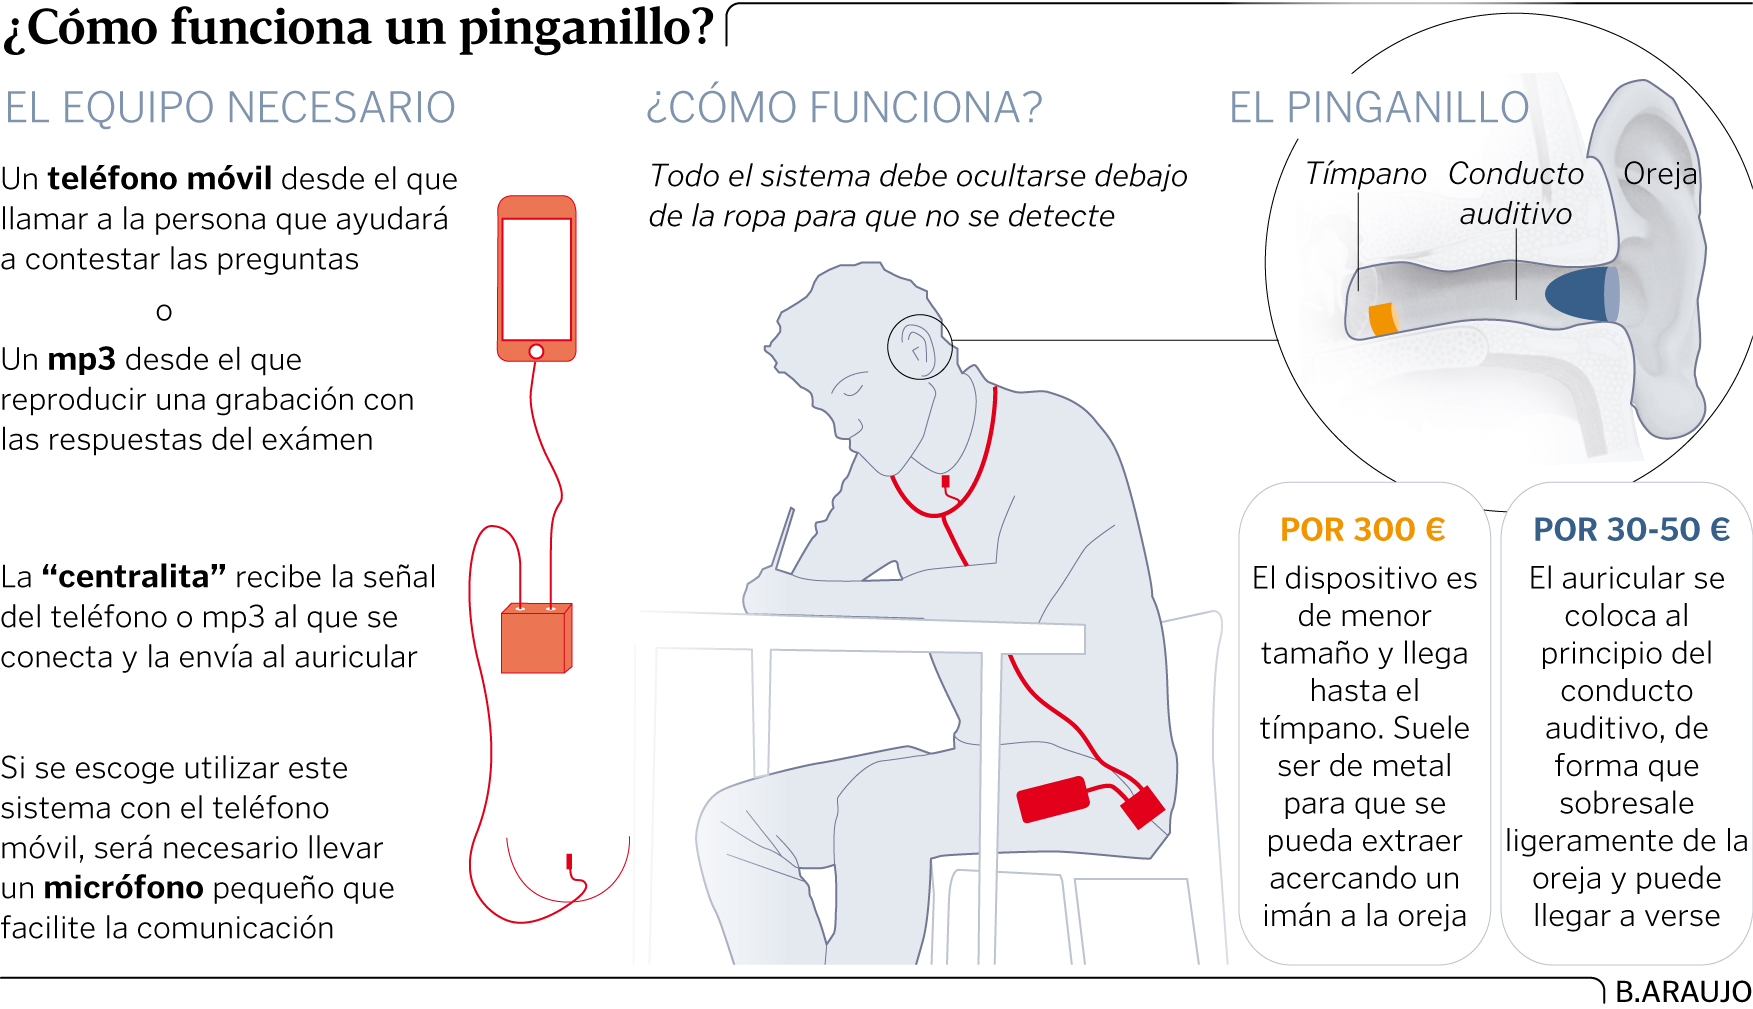 El pinganillo: la microchuleta que triunfa para copiar en los exámenes, Andalucía